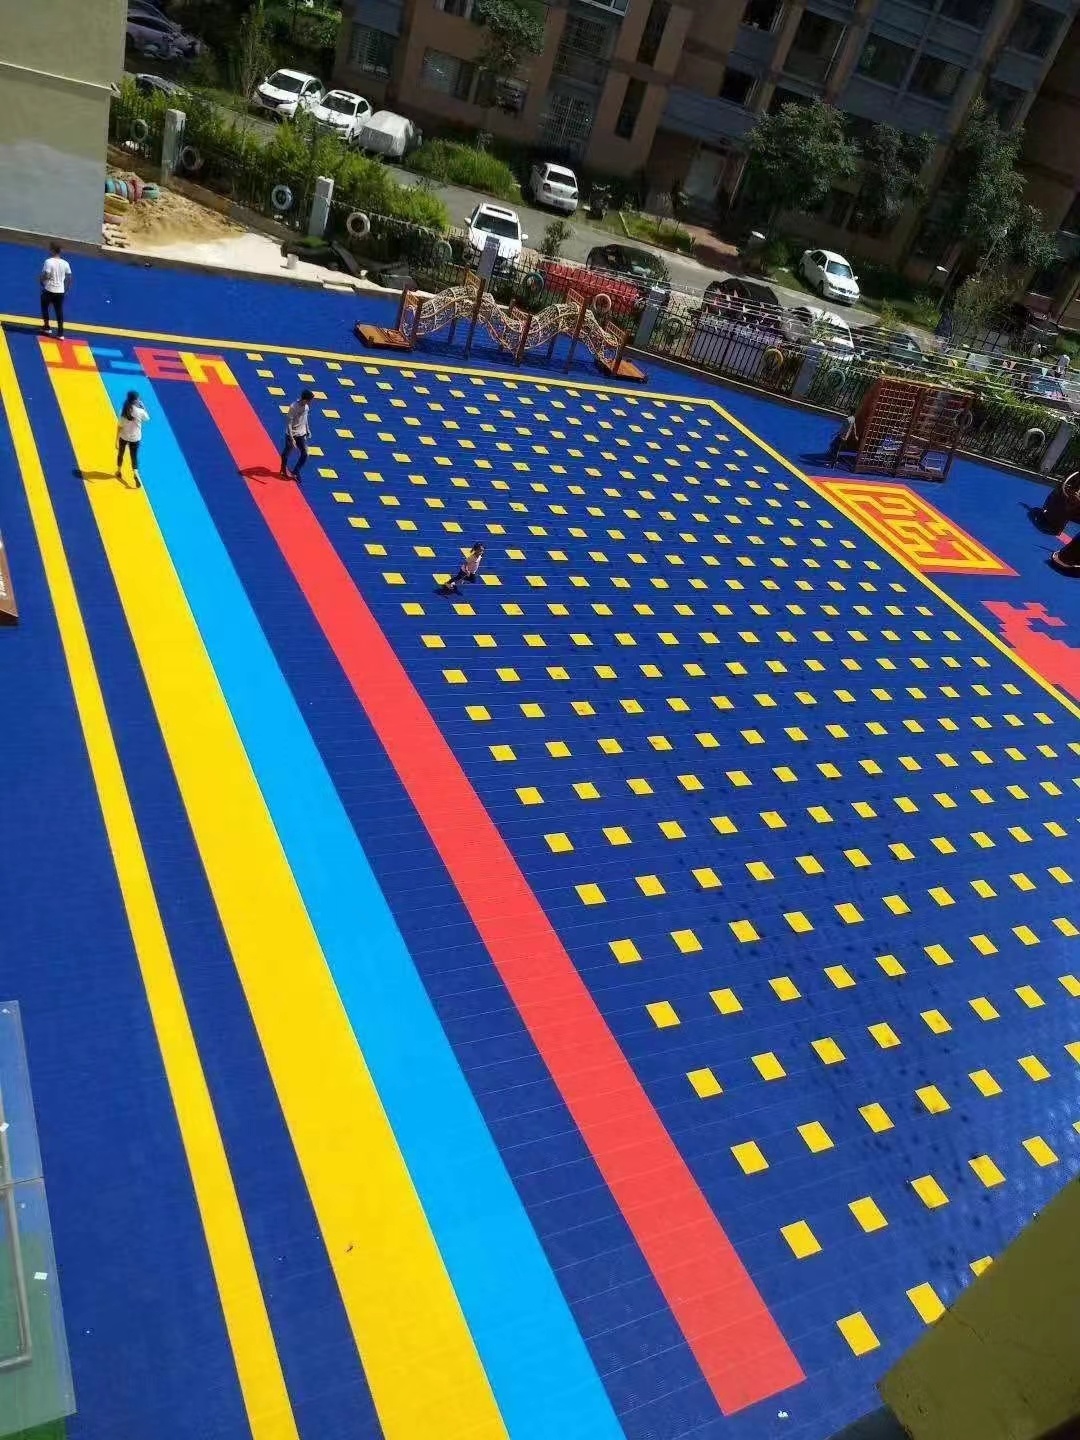 曼纳奇悬浮地板塑胶-幼儿园悬浮地板 游乐场悬浮地板 悬浮地板厂家 篮球场悬浮地板 悬浮地板施工 昆明悬浮地板厂家示例图17